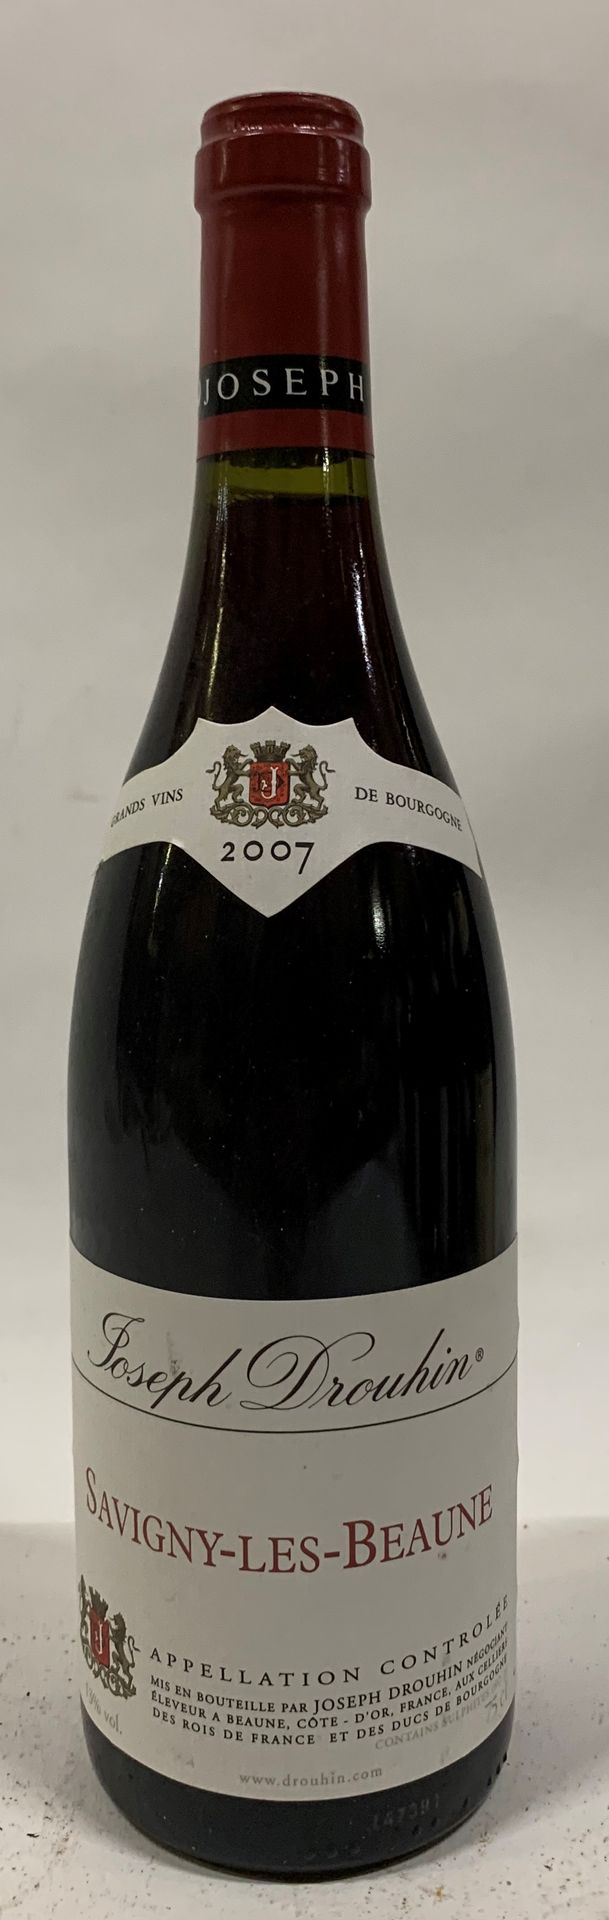 Null ● SAVIGNY-LÈS-BEAUNE | Joseph Drouhin, 2007 

7 bouteilles (ELS)

Réf. 115